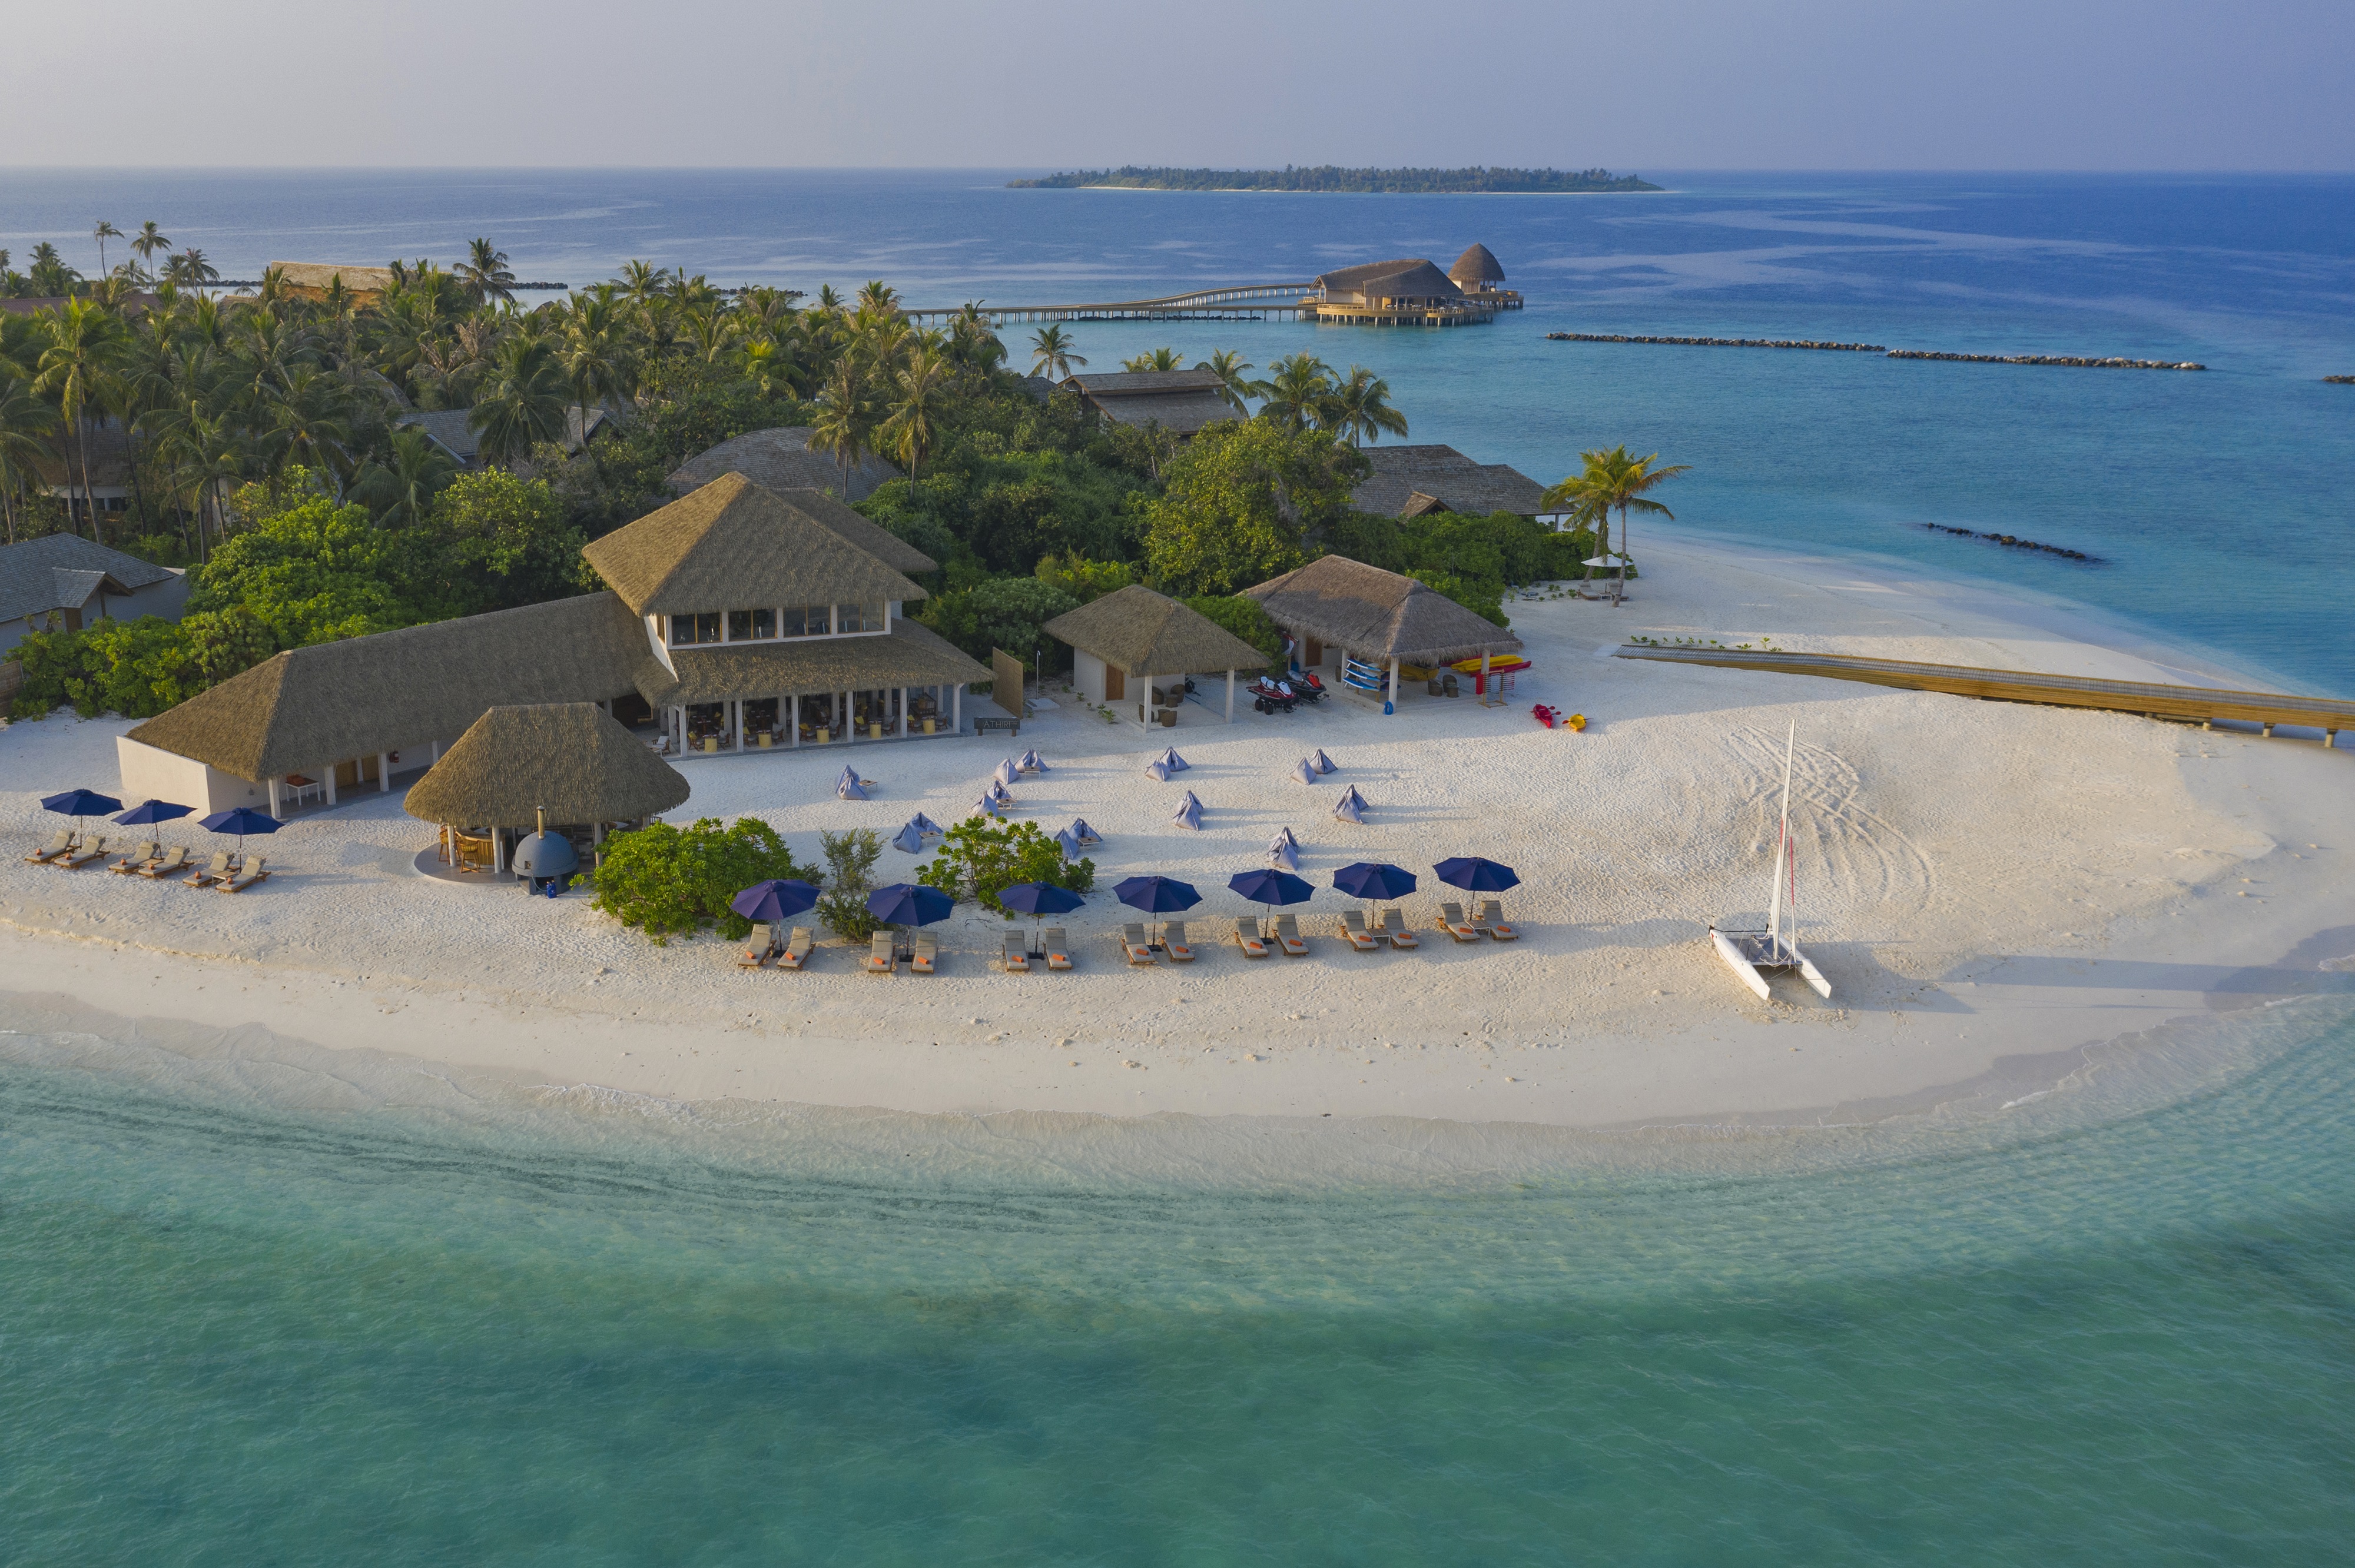 Zdjęcie Faarufushi Resort island - popularne miejsce wśród znawców relaksu